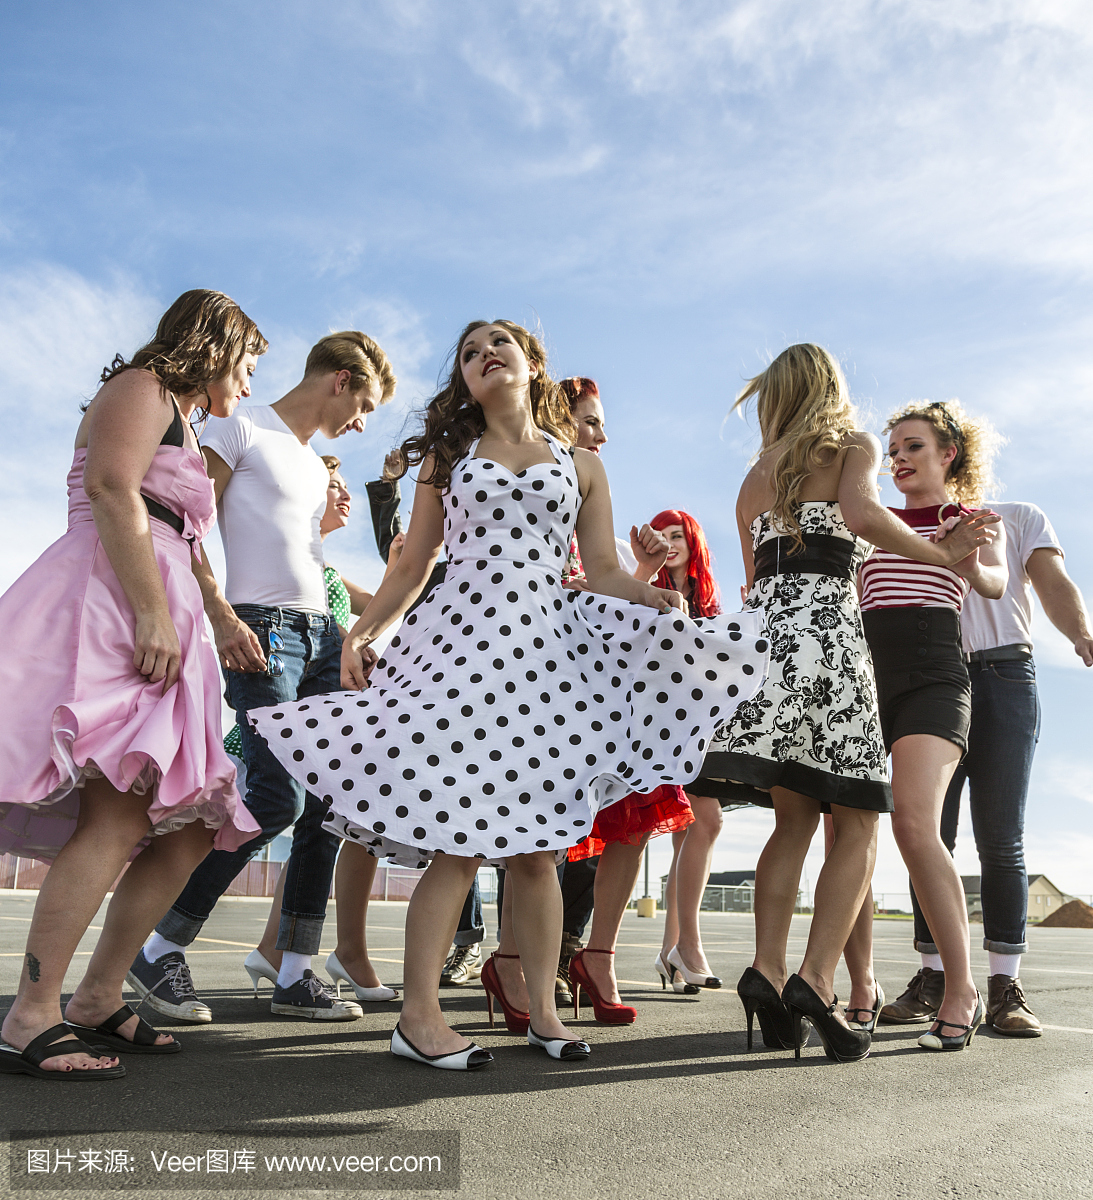 复古五十年代派对孩子在停车场跳舞